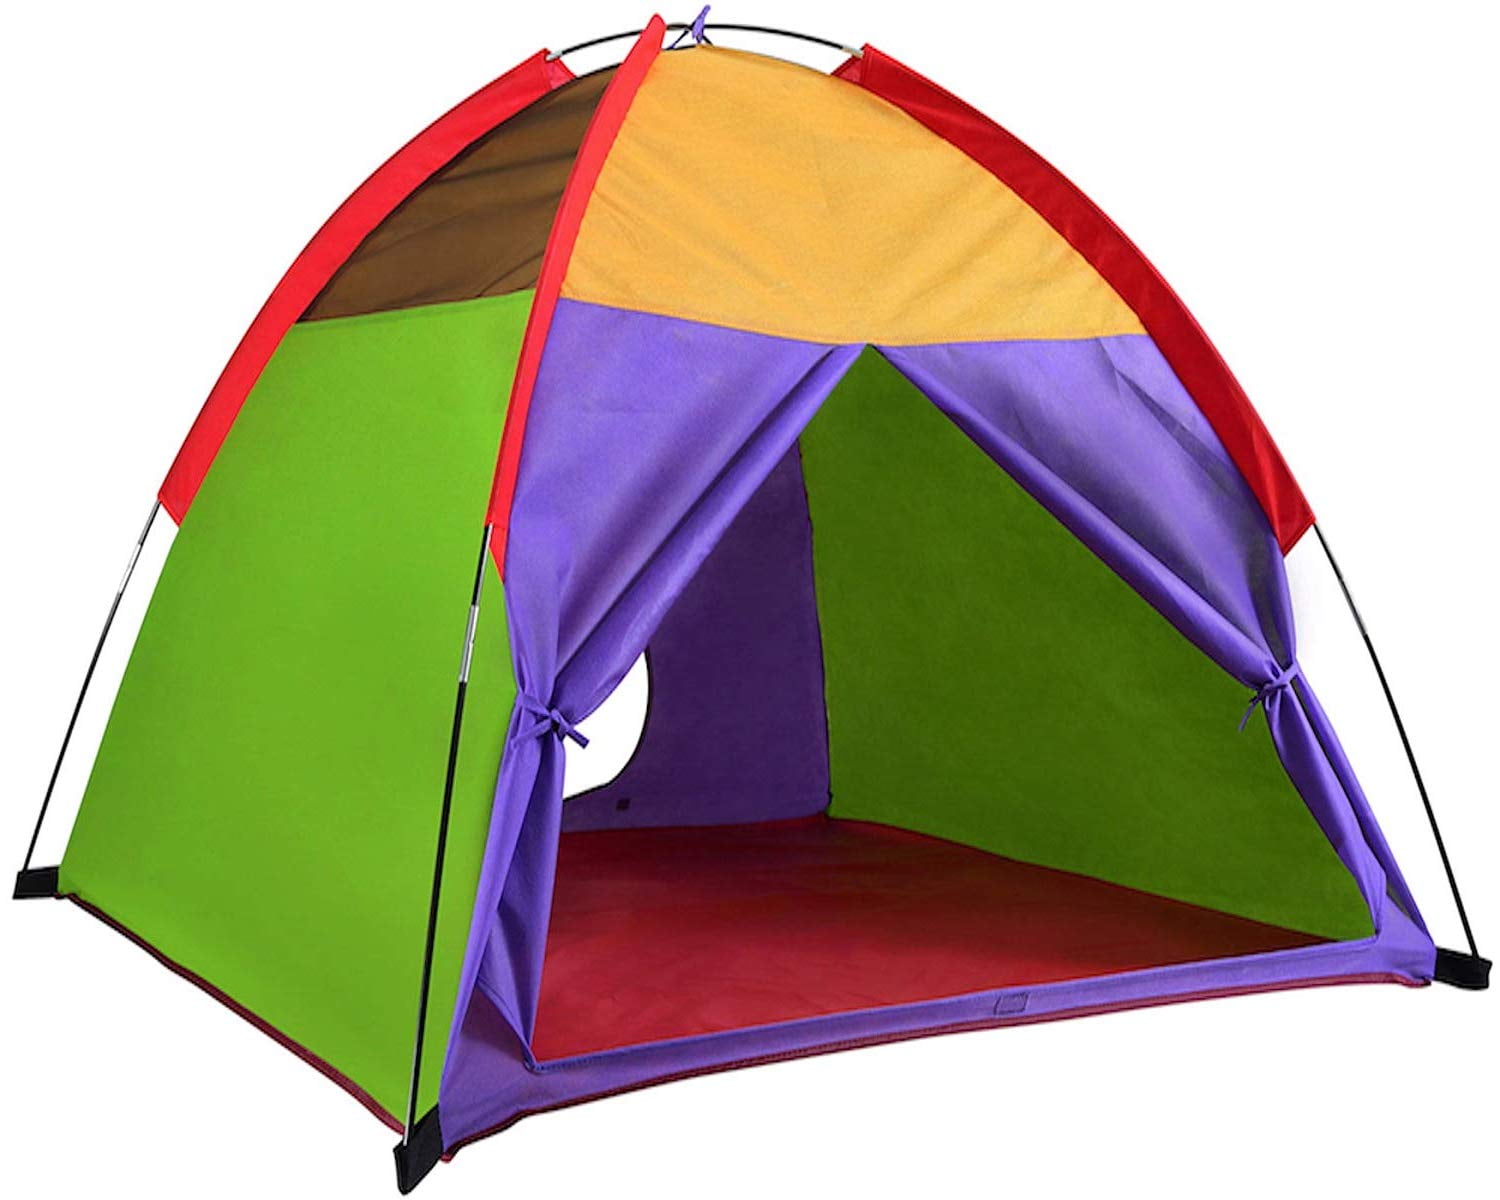 Alvantor Colorful Kids Play Tent Outdoor Camping Beach Tent Indoor Children Fun 